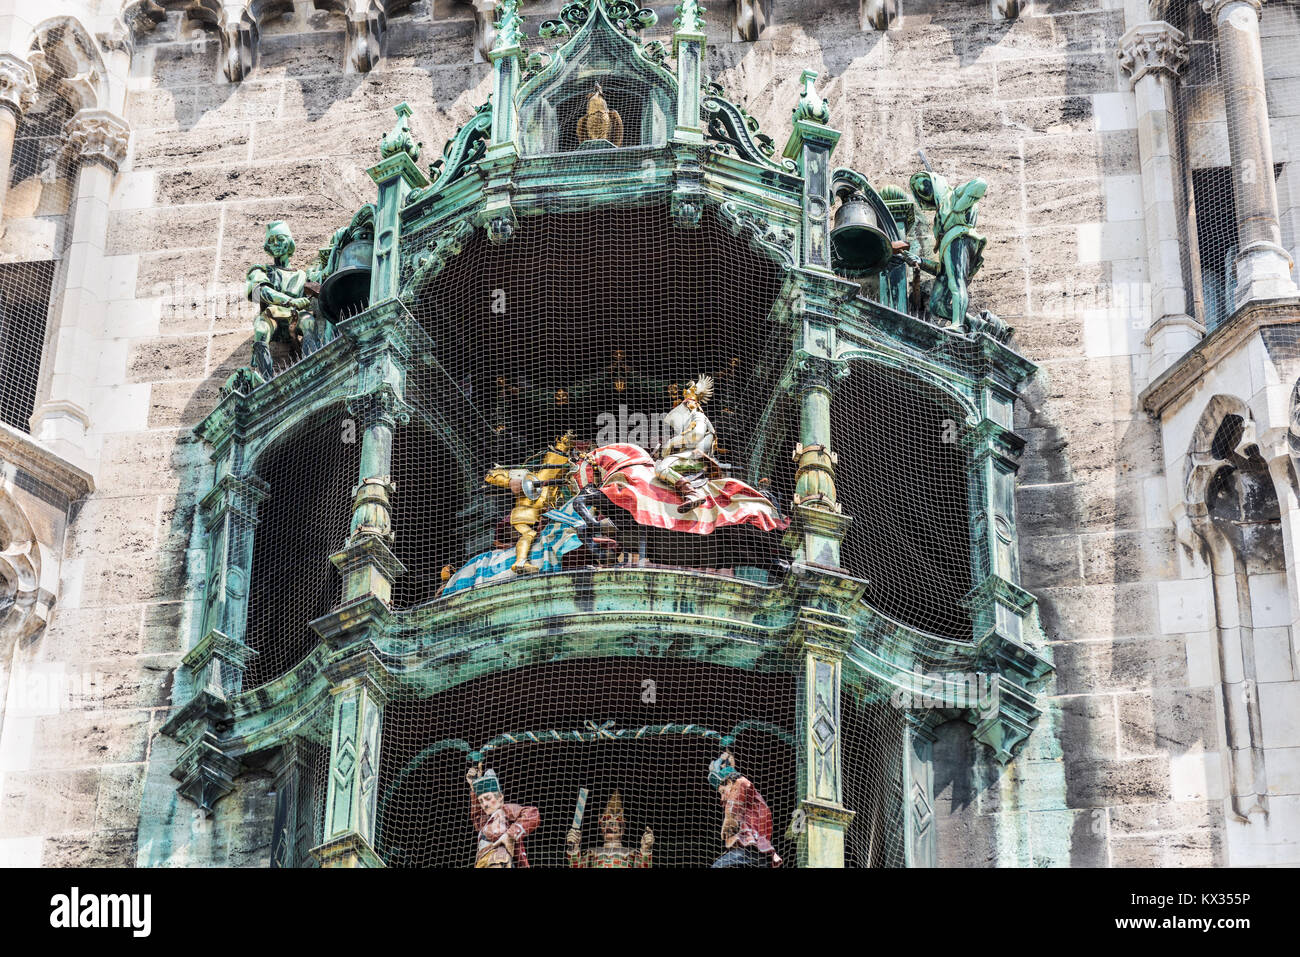 Monaco di Baviera, Germania - 29 Maggio 2016: figure danzanti sulla torre del Marienplatz Municipio nuovo nella famosa Place Square nella città europea Monaco di Baviera, Germania Foto Stock